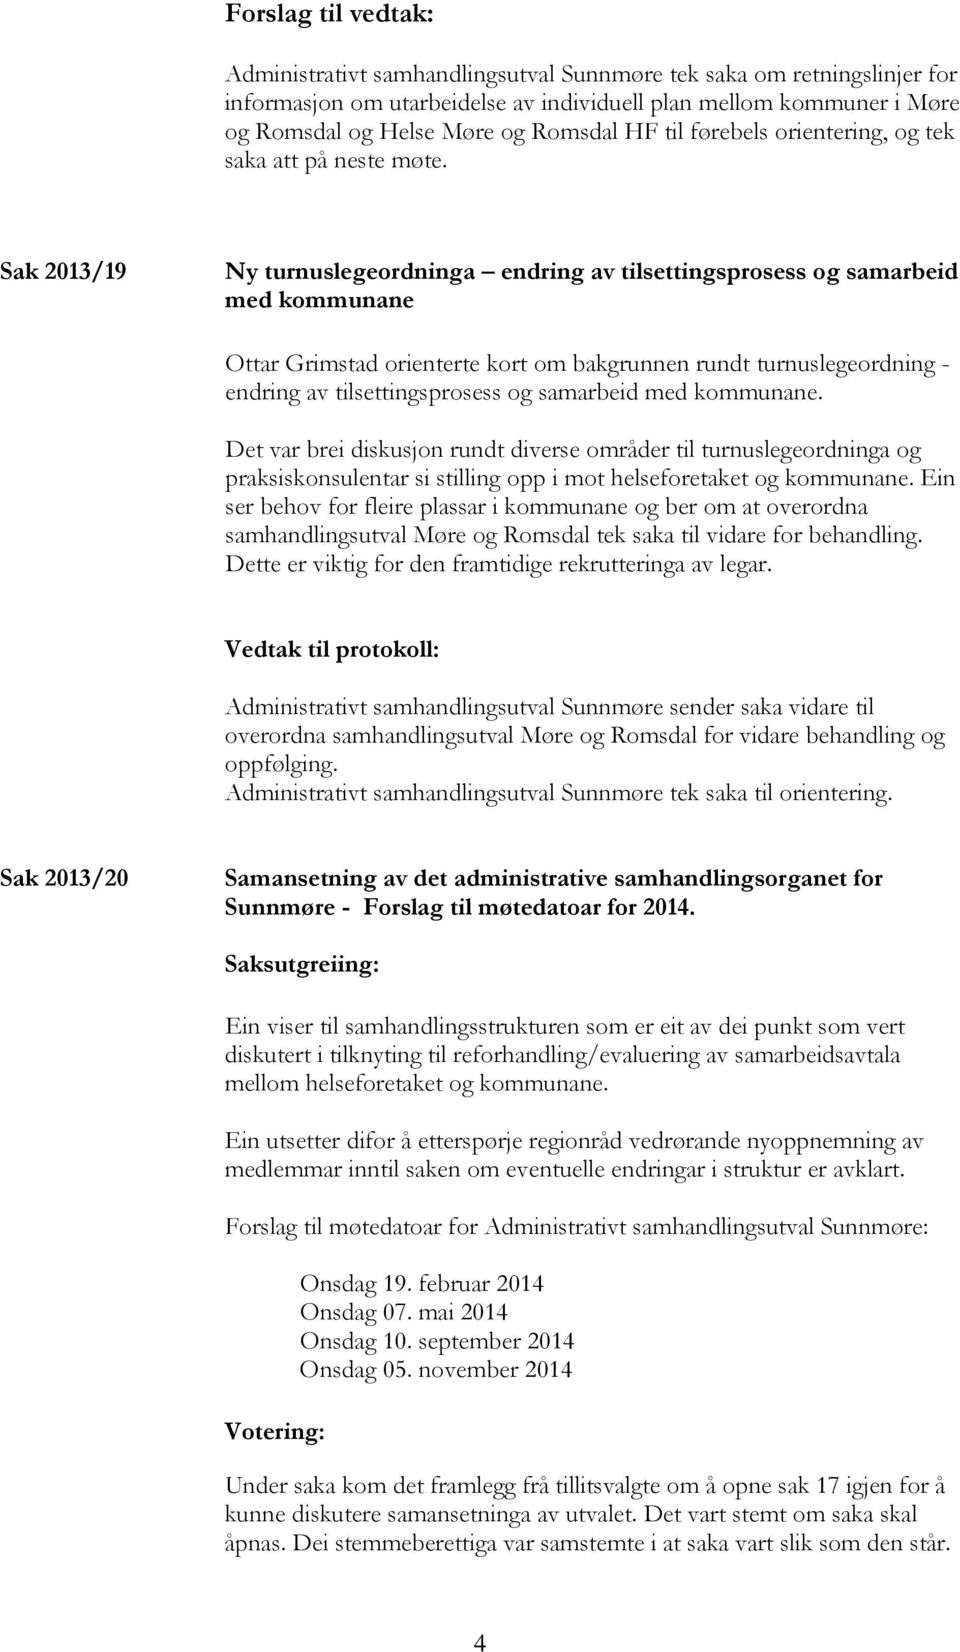 Sak 2013/19 Ny turnuslegeordninga endring av tilsettingsprosess og samarbeid med kommunane Ottar Grimstad orienterte kort om bakgrunnen rundt turnuslegeordning - endring av tilsettingsprosess og